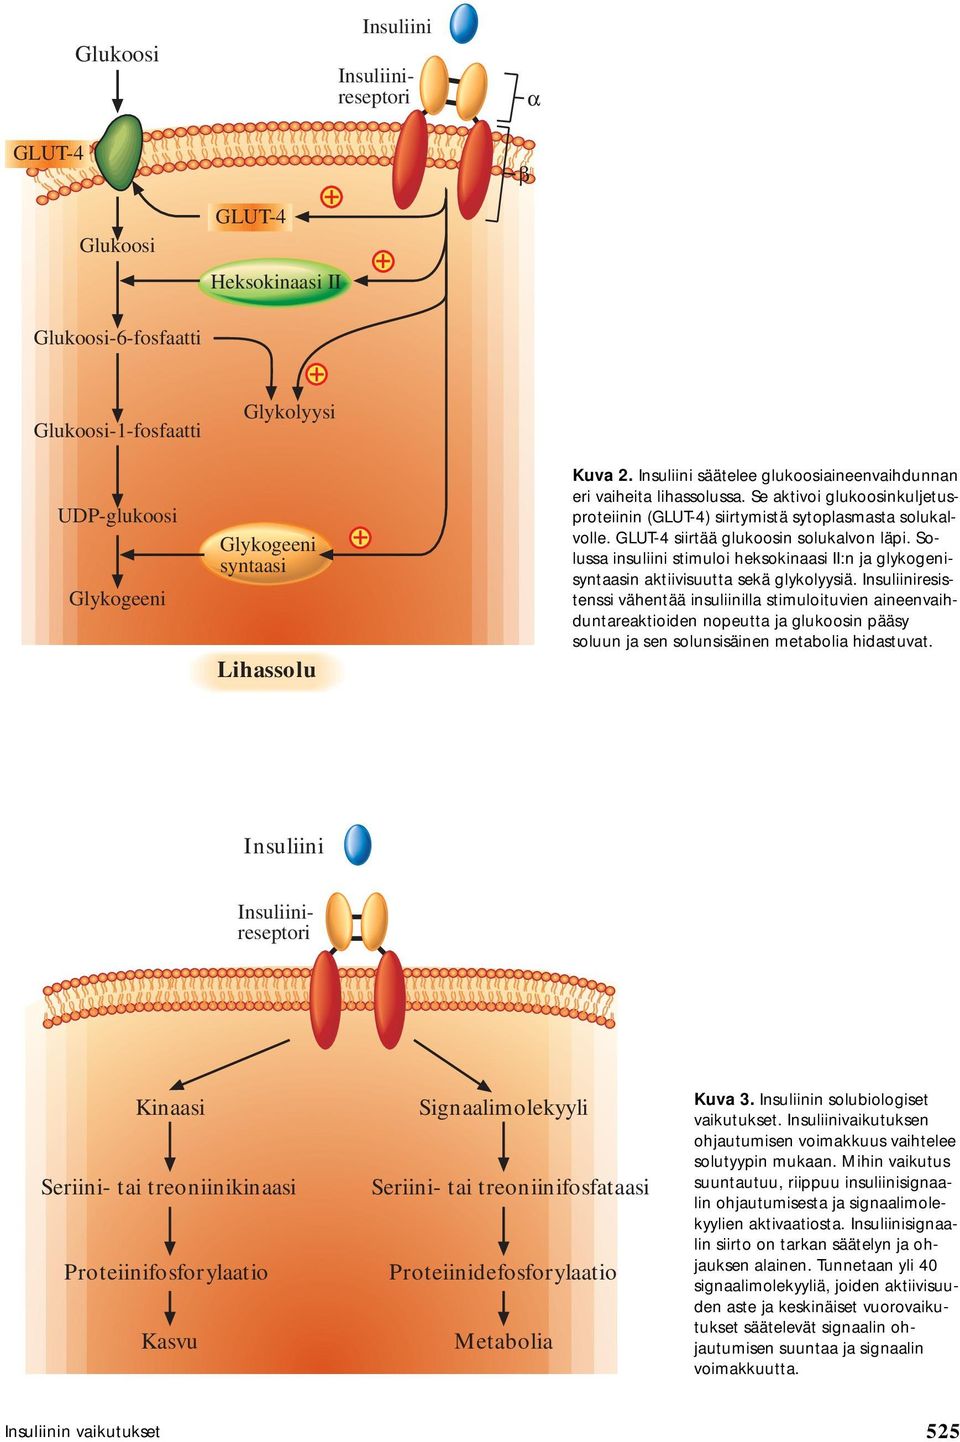 Solussa insuliini stimuloi heksokinaasi II:n ja glykogenisyntaasin aktiivisuutta sekä glykolyysiä.